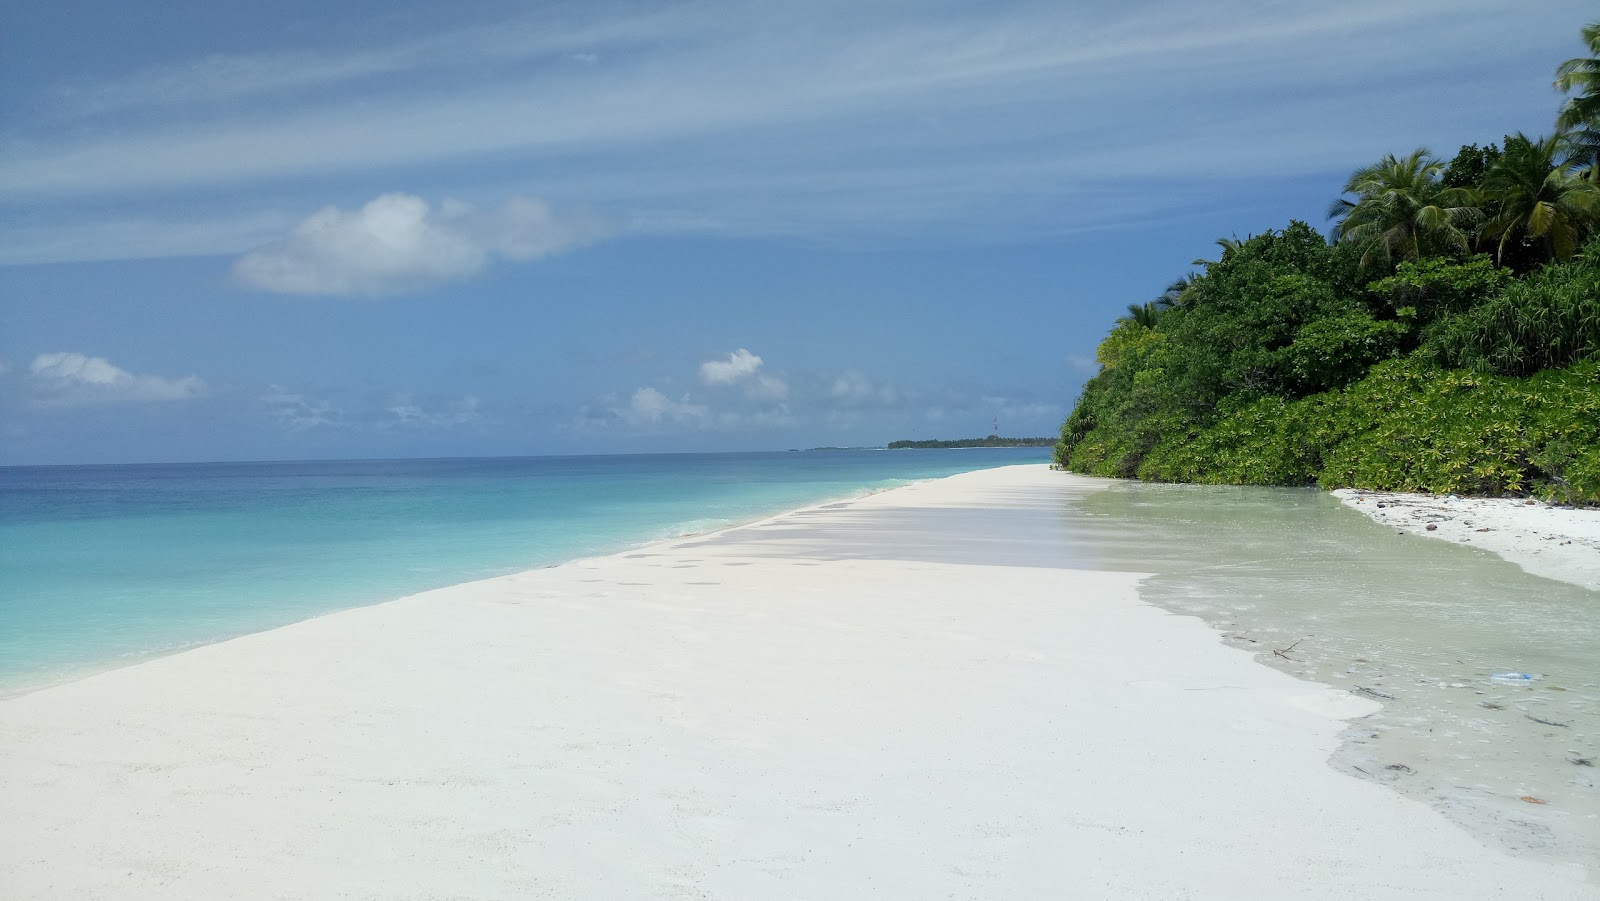 Zdjęcie Ungulu Island Beach z powierzchnią jasny piasek